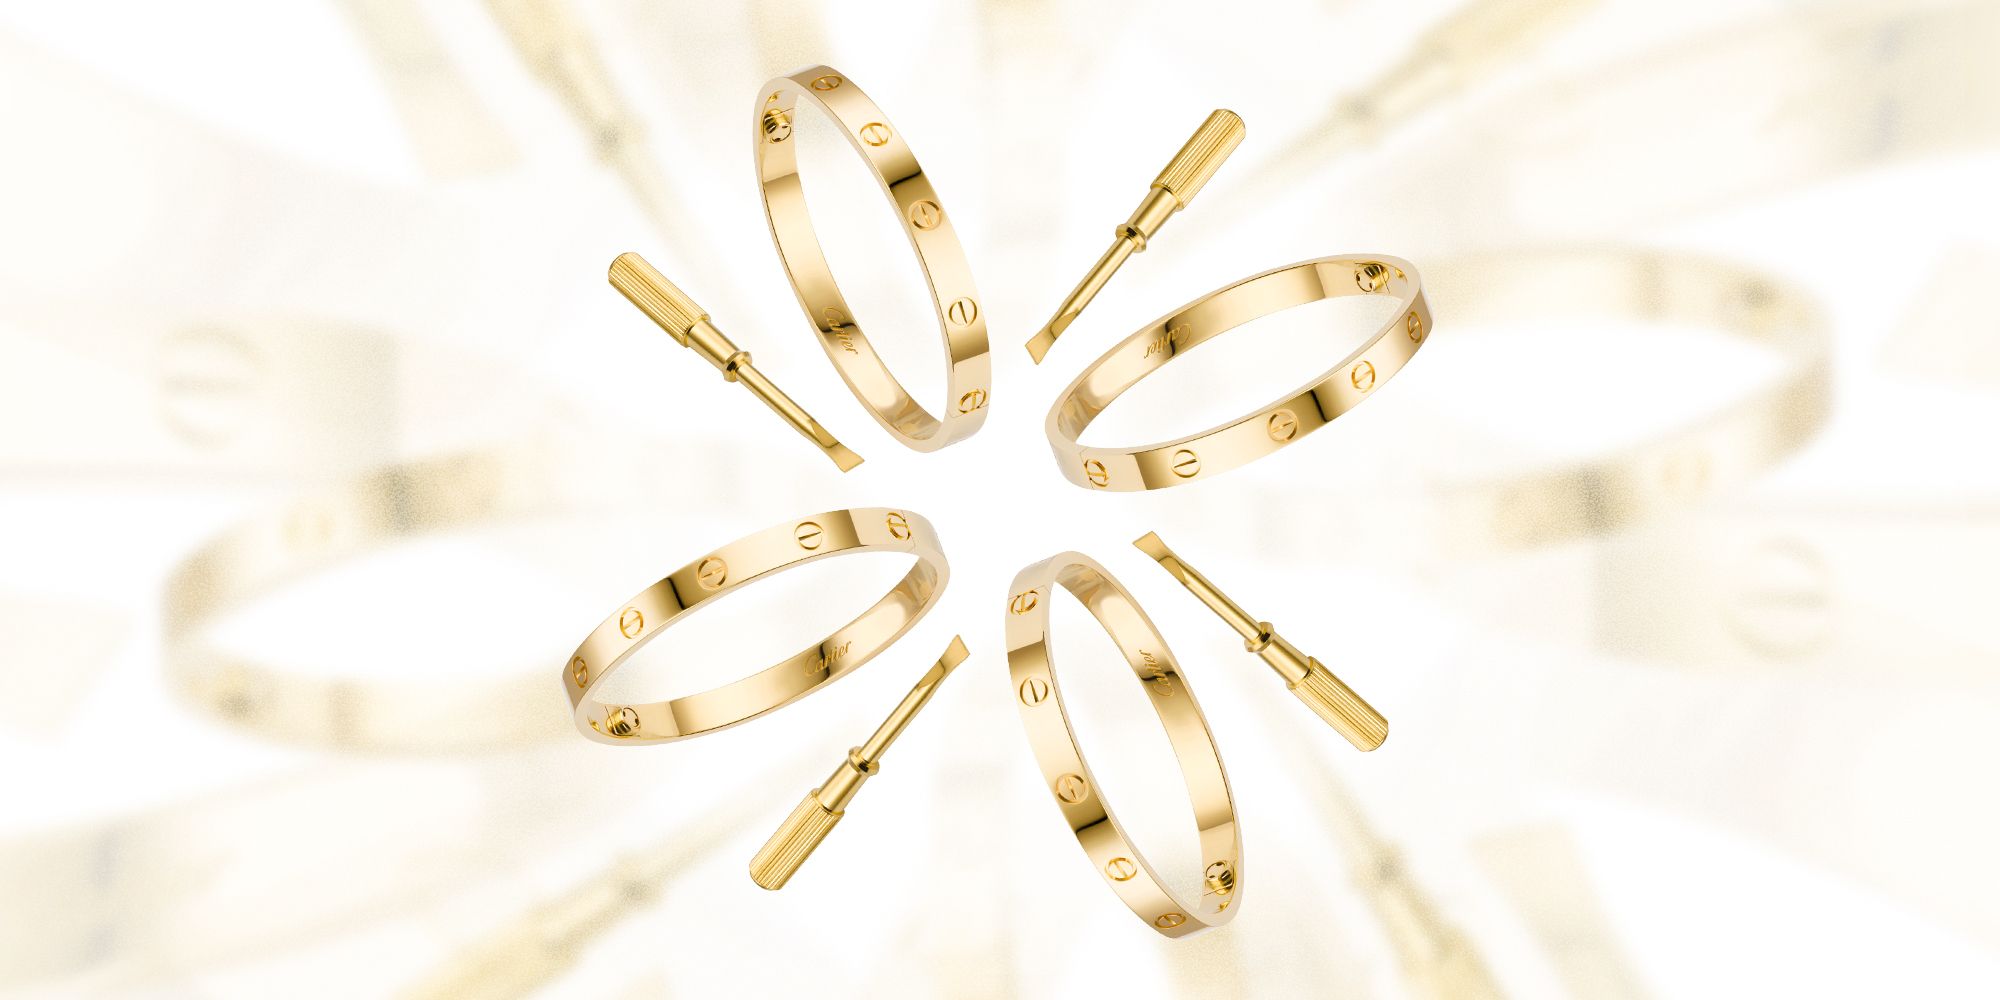 Cartier LOVE 18K Rose Gold Bangle Bracelet and Screwdriver Size 17 $6,900 |  eBay